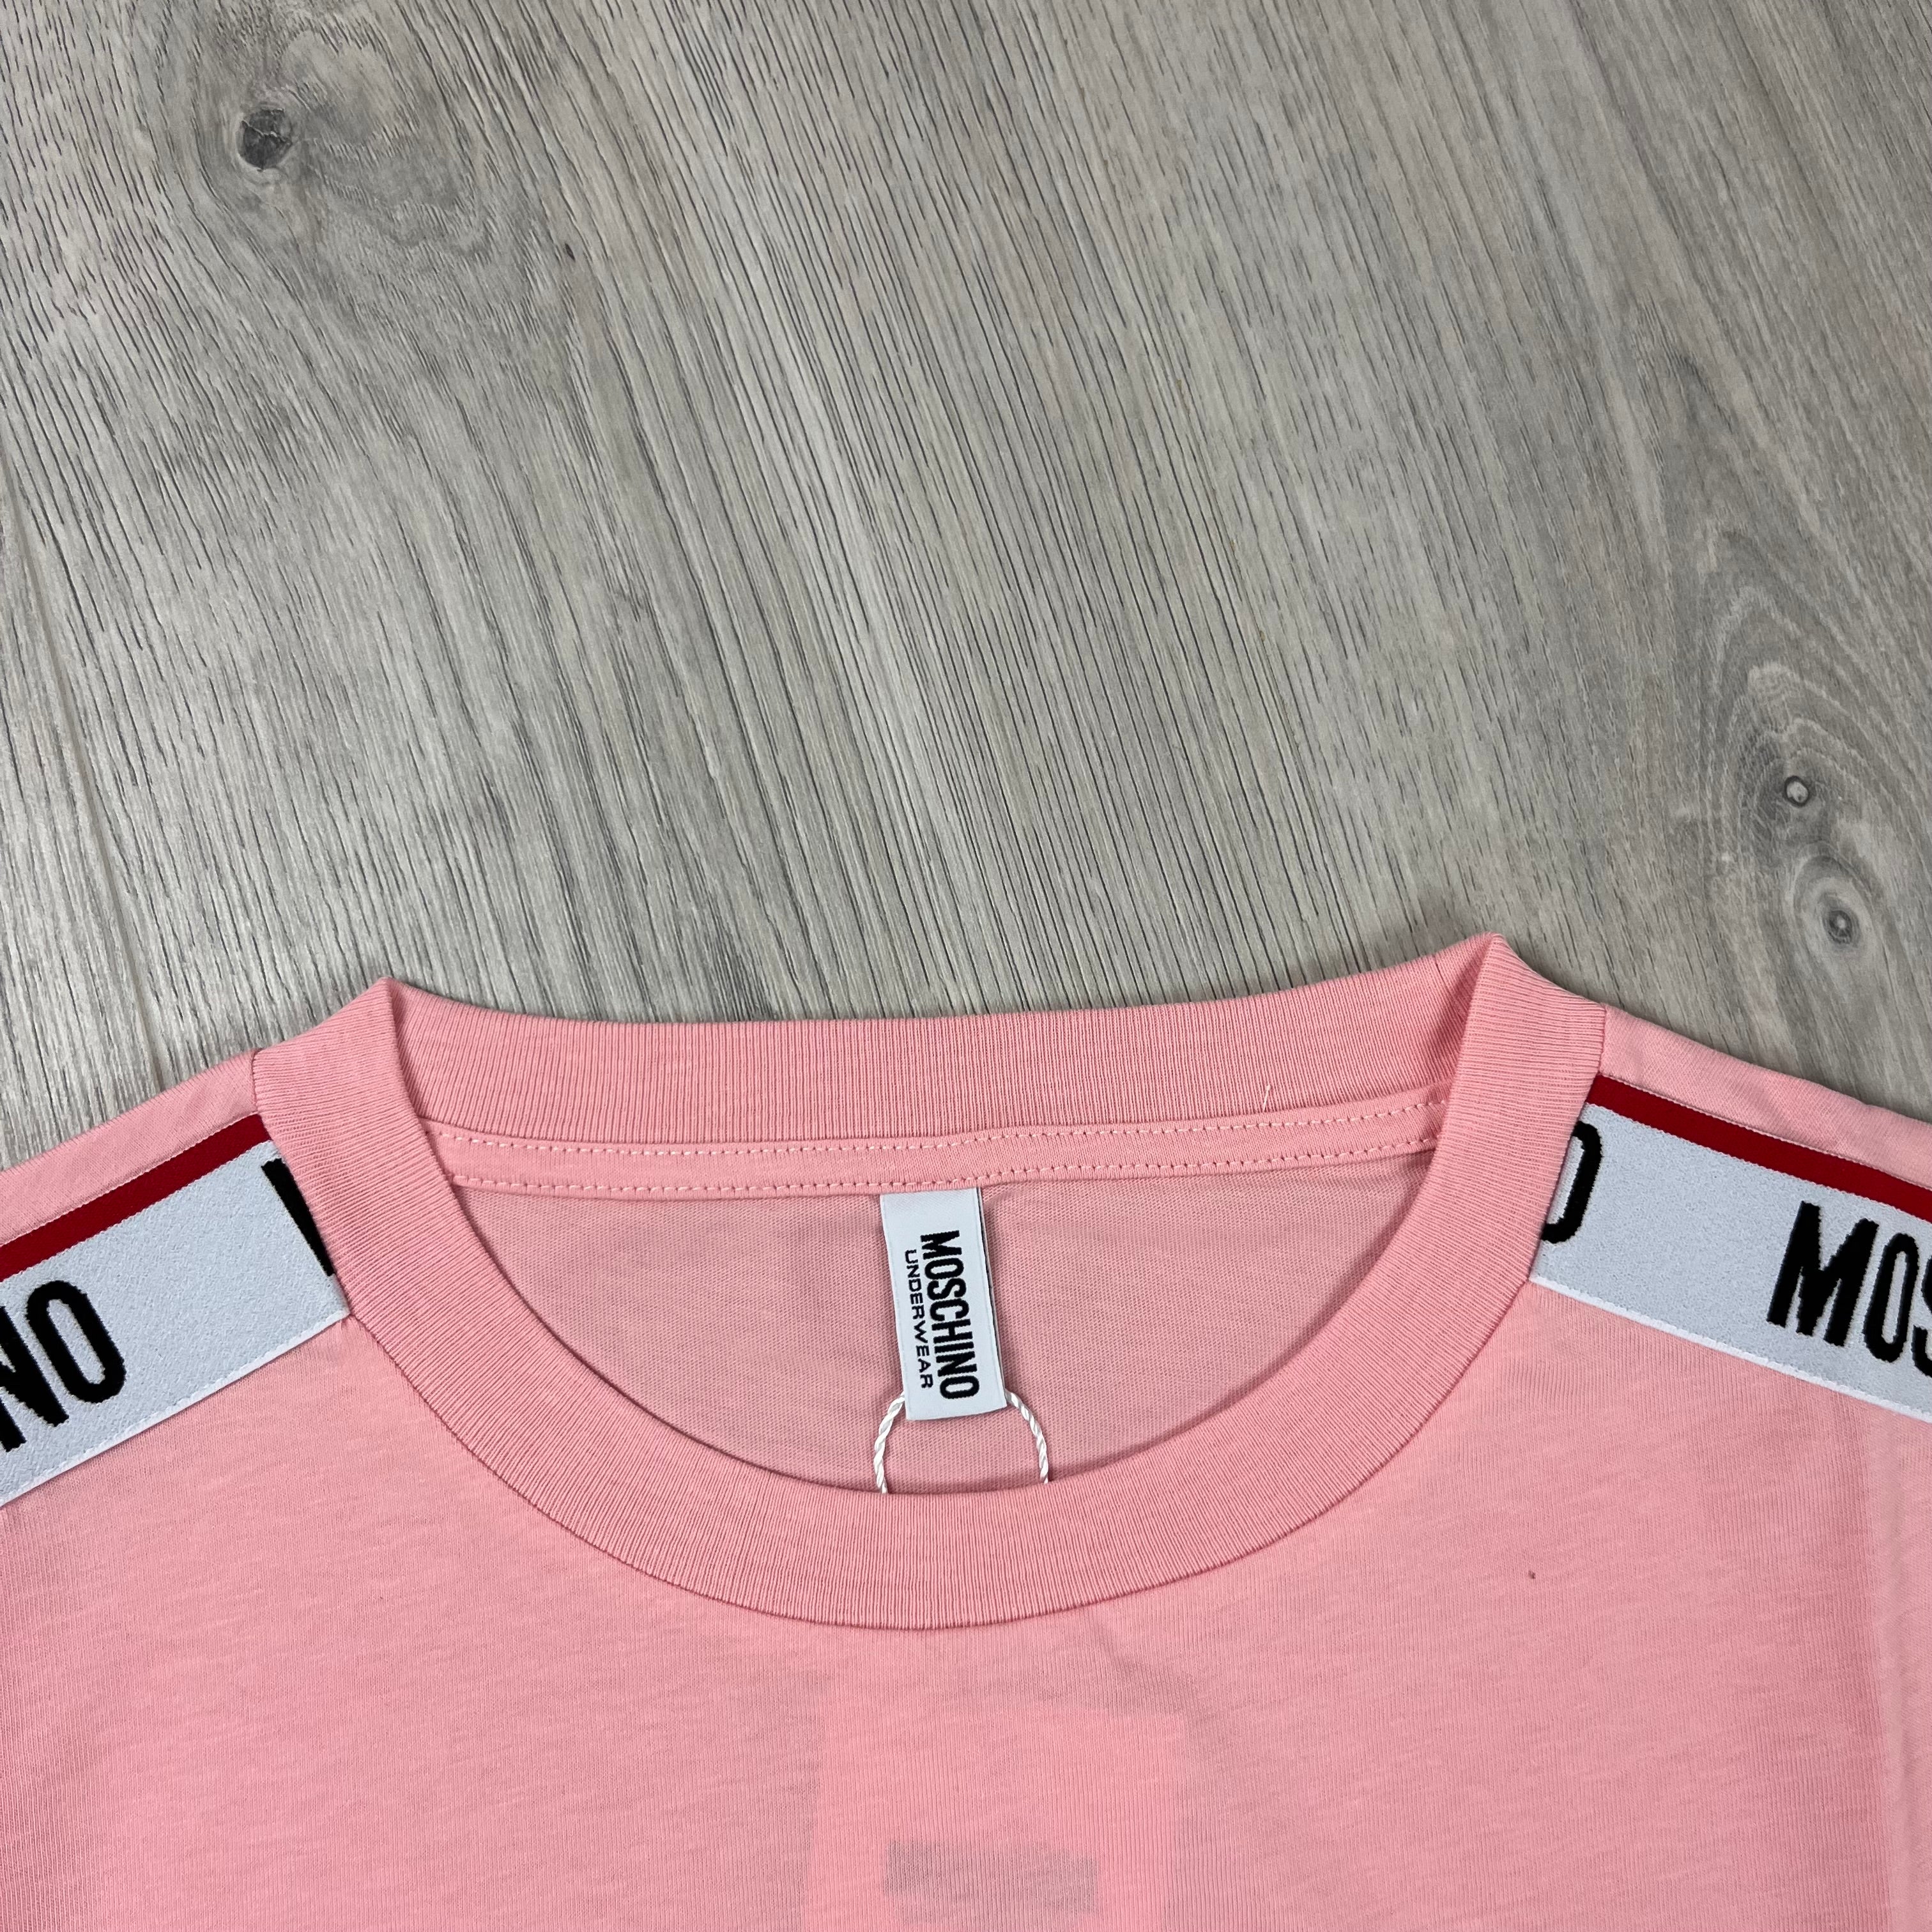 Moschino Tape T-Shirt